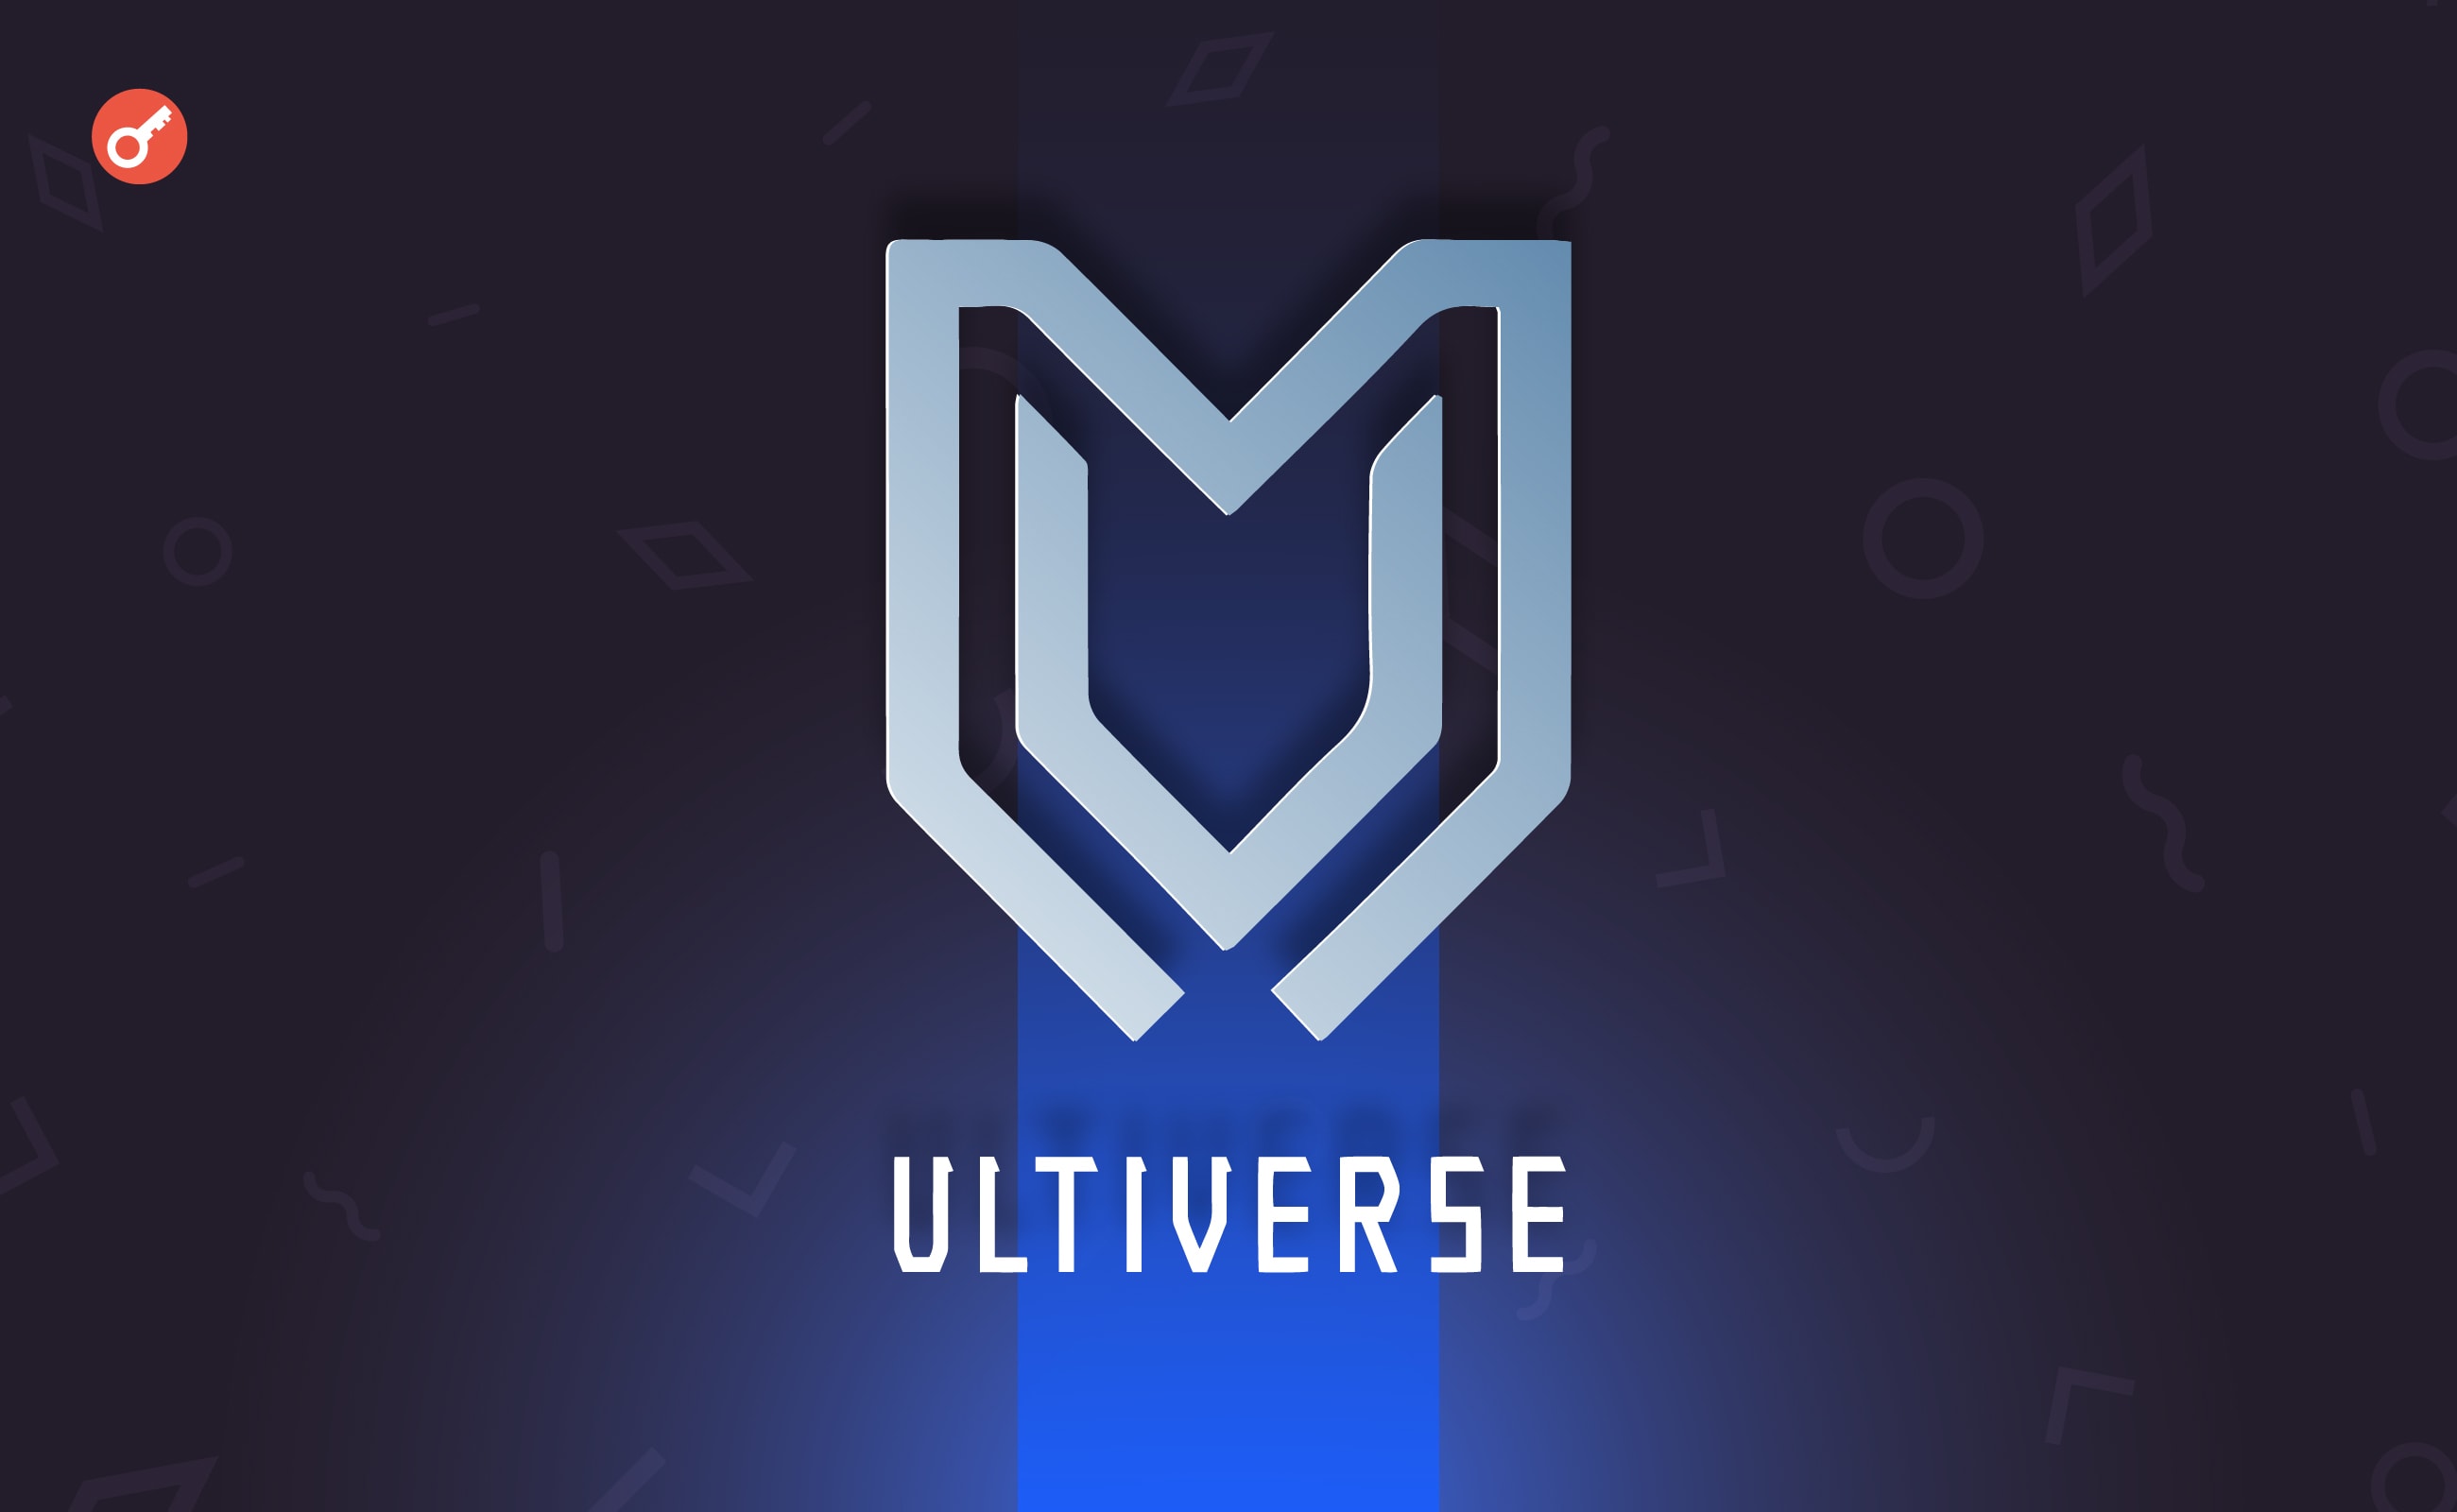 Игровая платформа Ultiverse привлекла $4 млн при оценке в $150 млн. Заглавный коллаж новости.